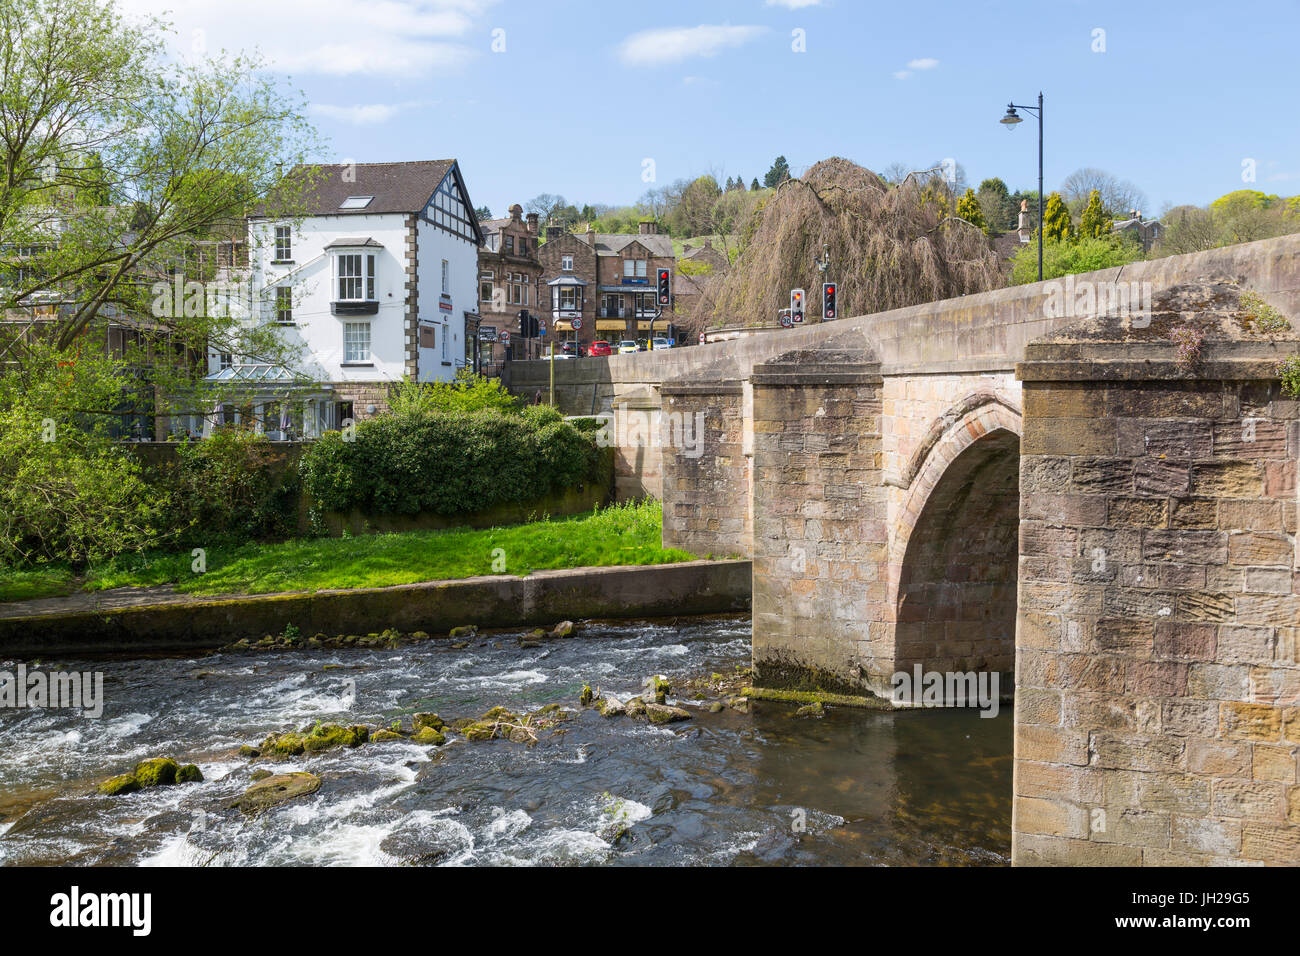 Le pont sur la rivière Derwent, Matlock, Derbyshire Dales, Derbyshire, Angleterre, Royaume-Uni, Europe Banque D'Images